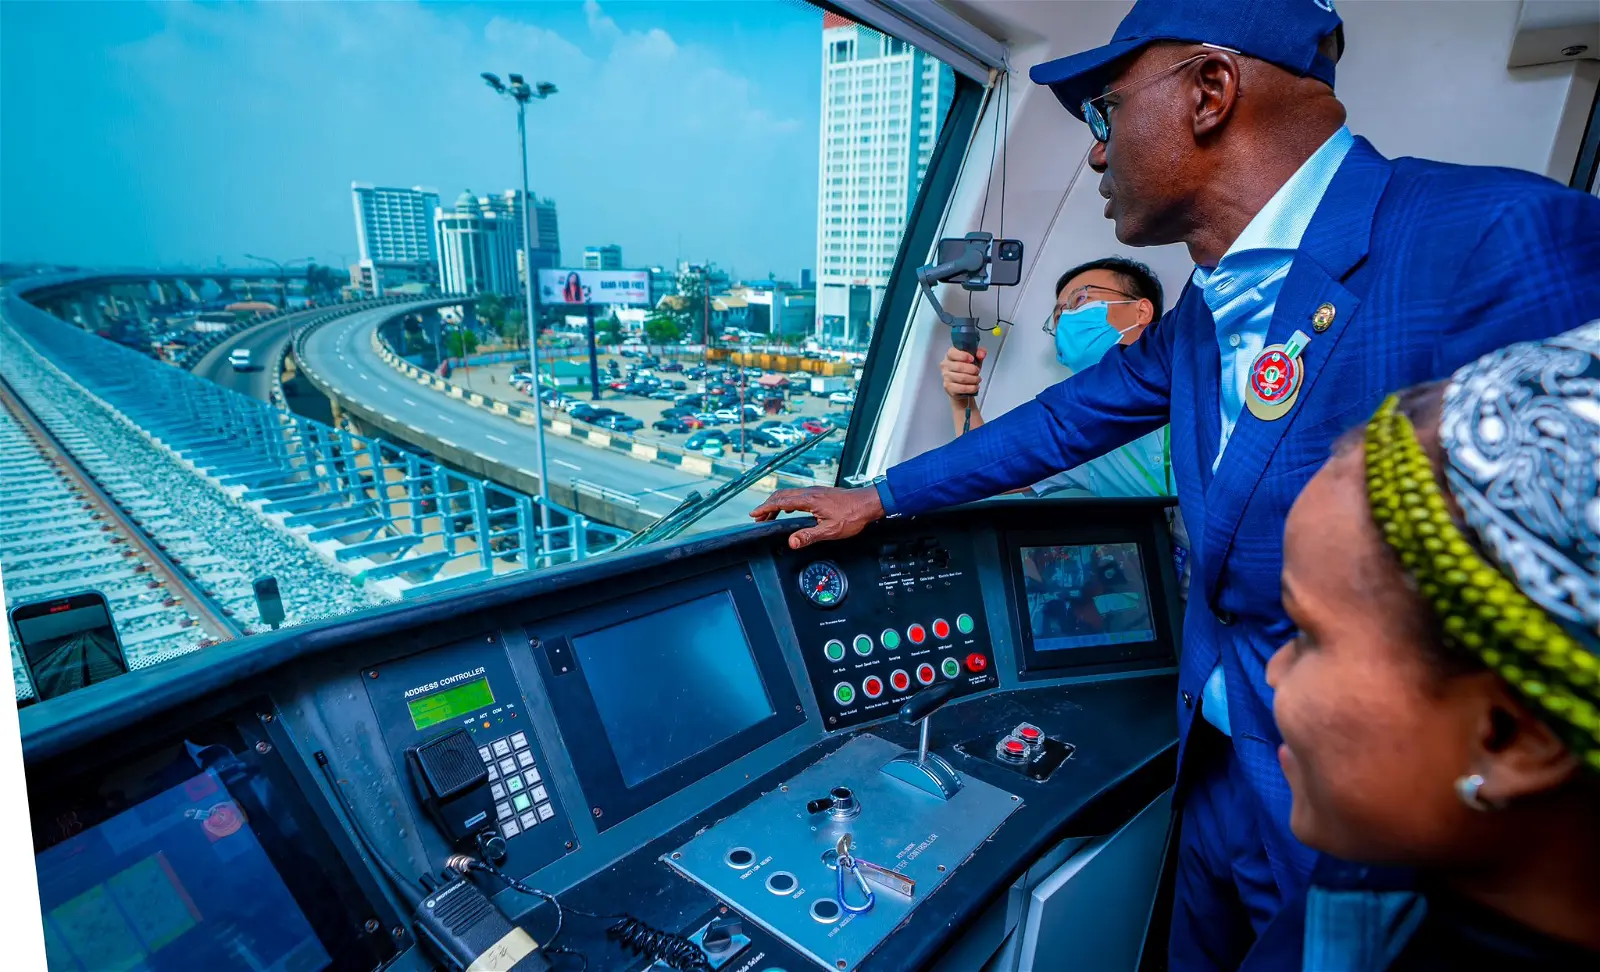 Lagos rail services Cresit: Vanguard